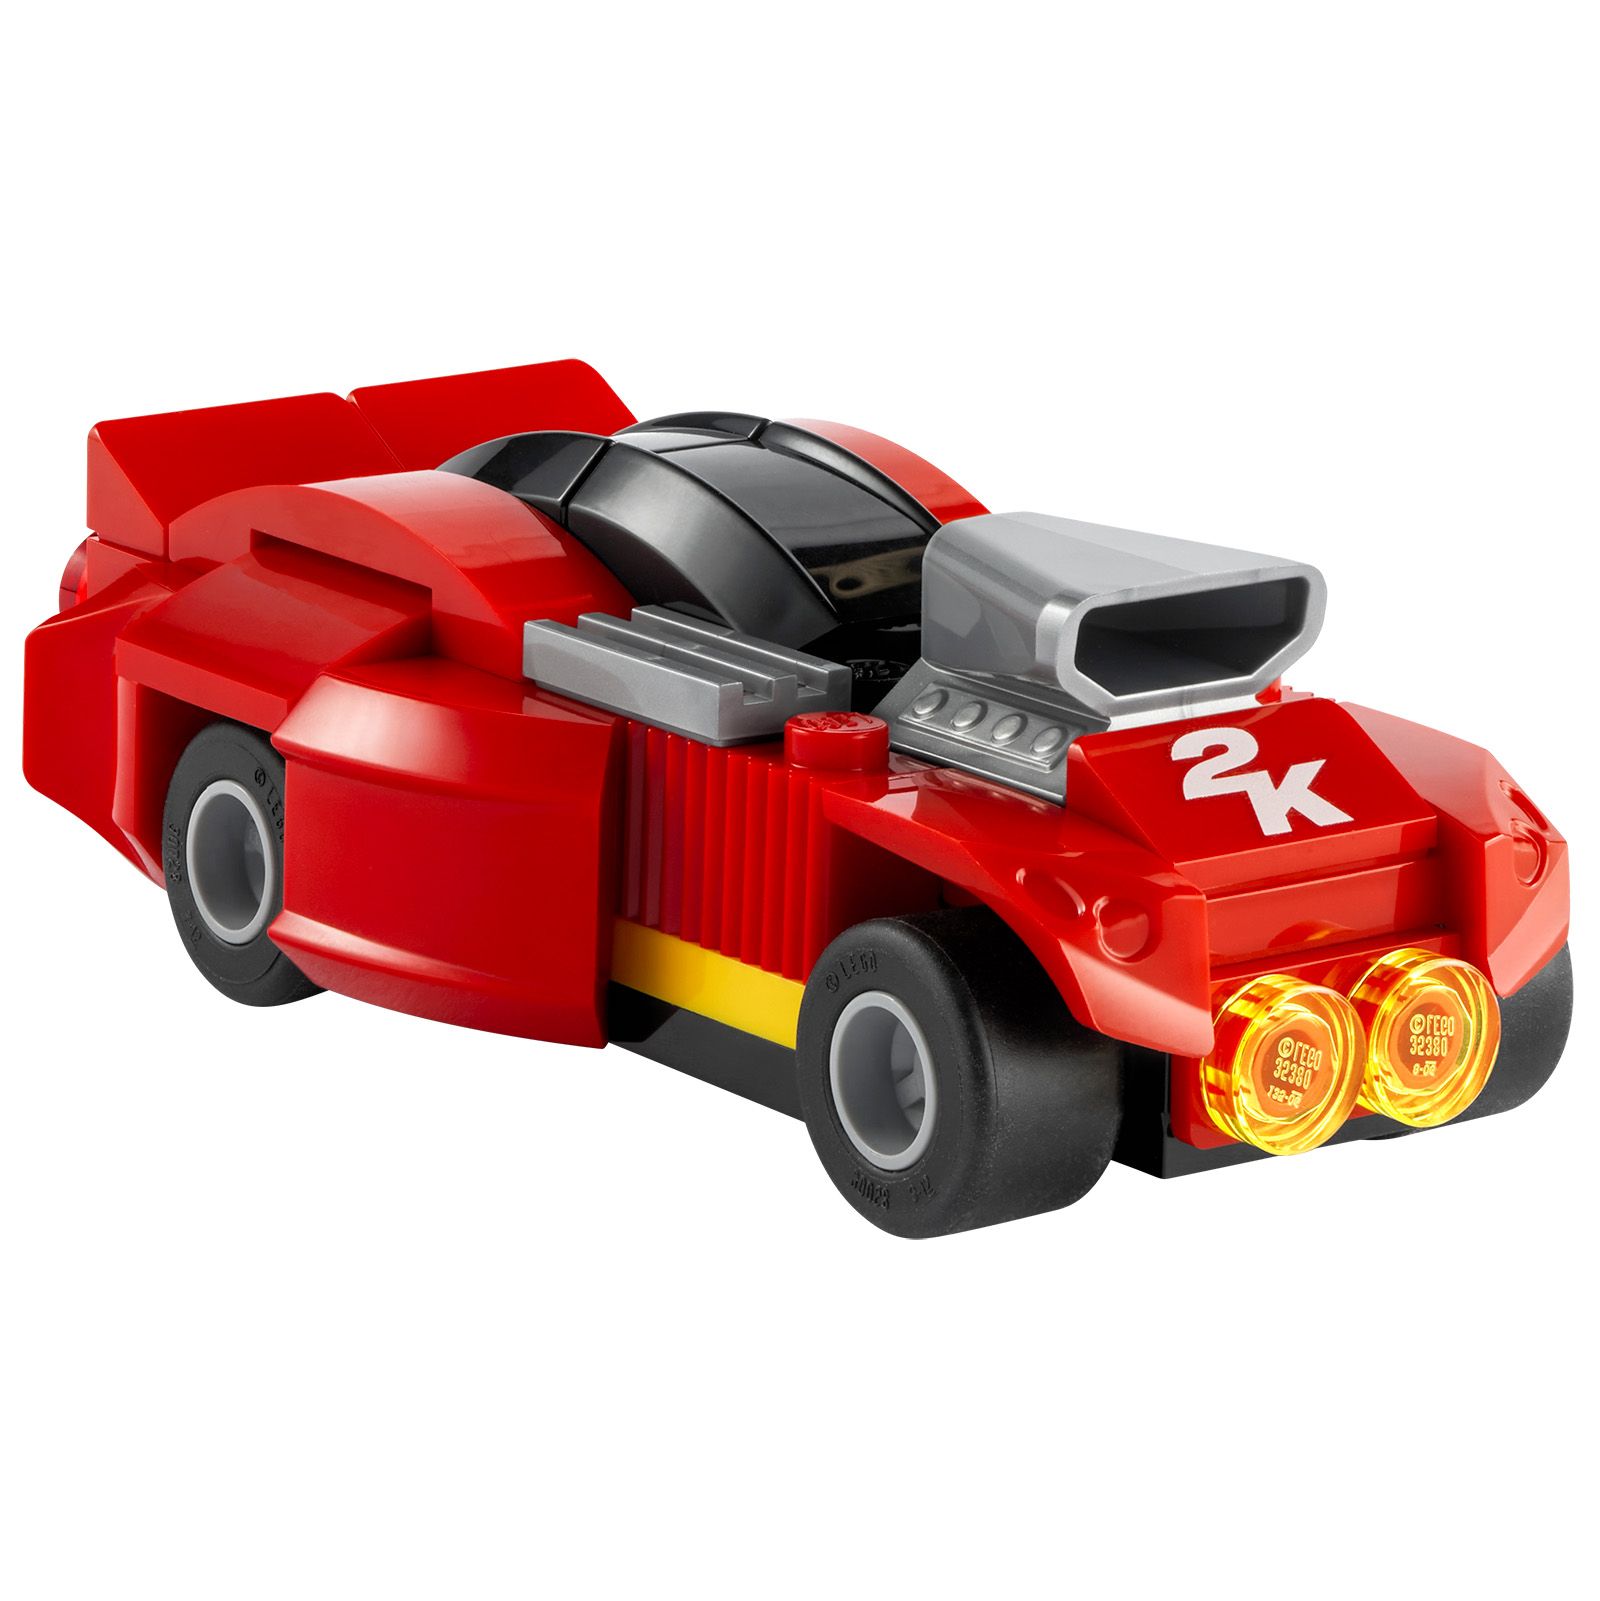 LEGO 2K Drive: 'n sleepwa en 'n LEGO-produk wat saam met sekere fisiese weergawes van die videospeletjie aangebied word